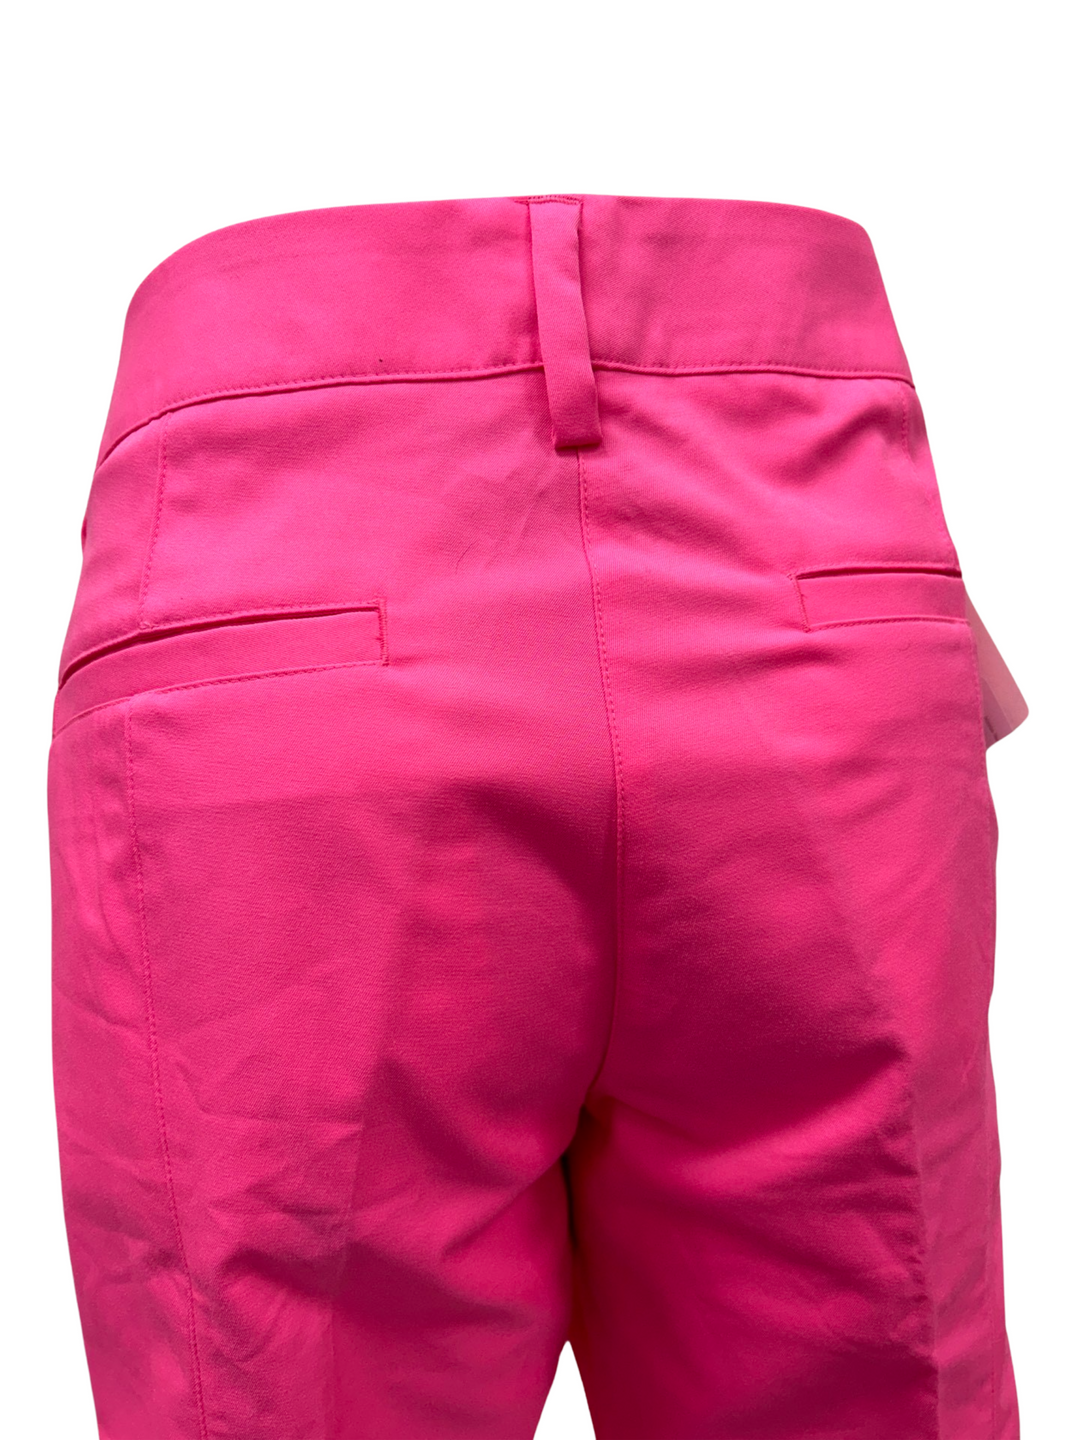 Adidas Bermuda Shorts - Pink - Size 10 - Skorzie